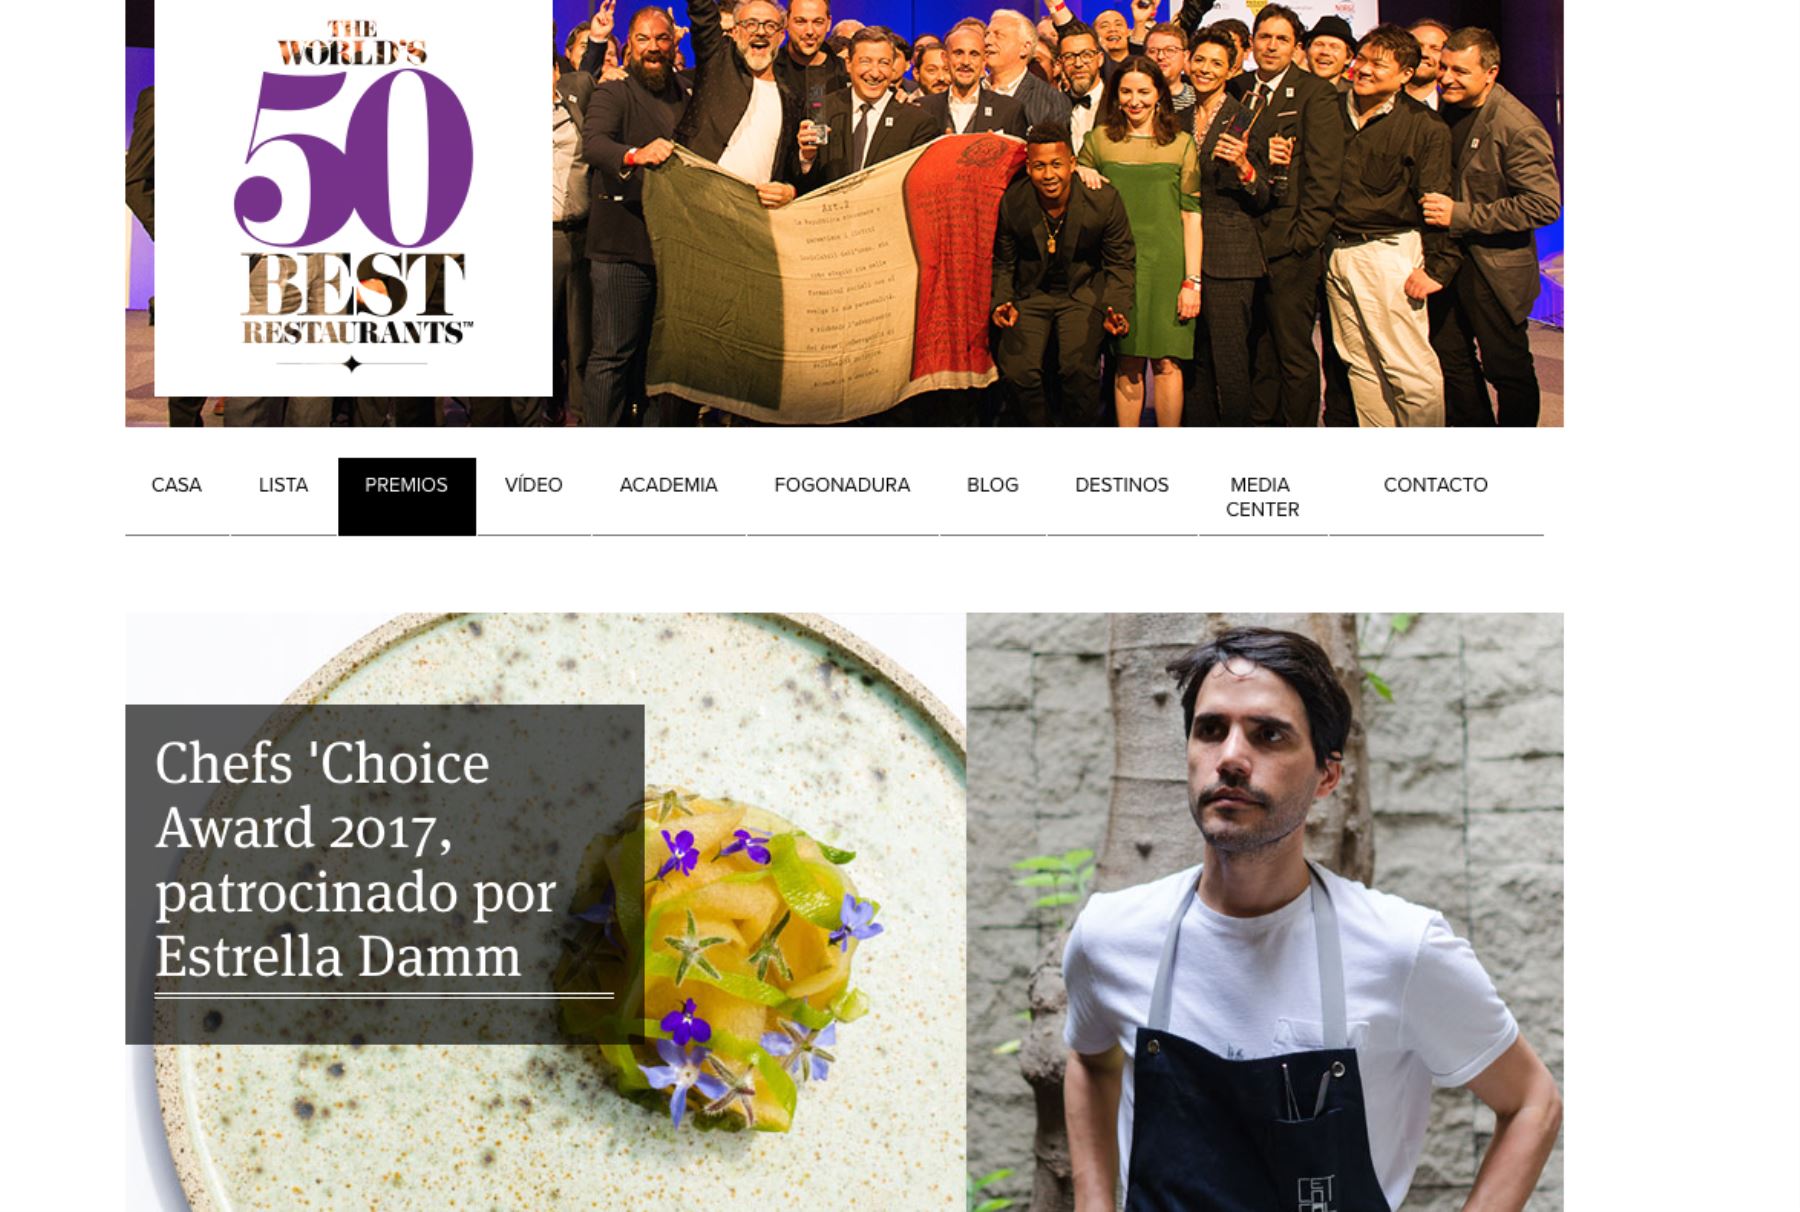 El peruano Virgilio Martínez fue elegido el mejor chef del mundo